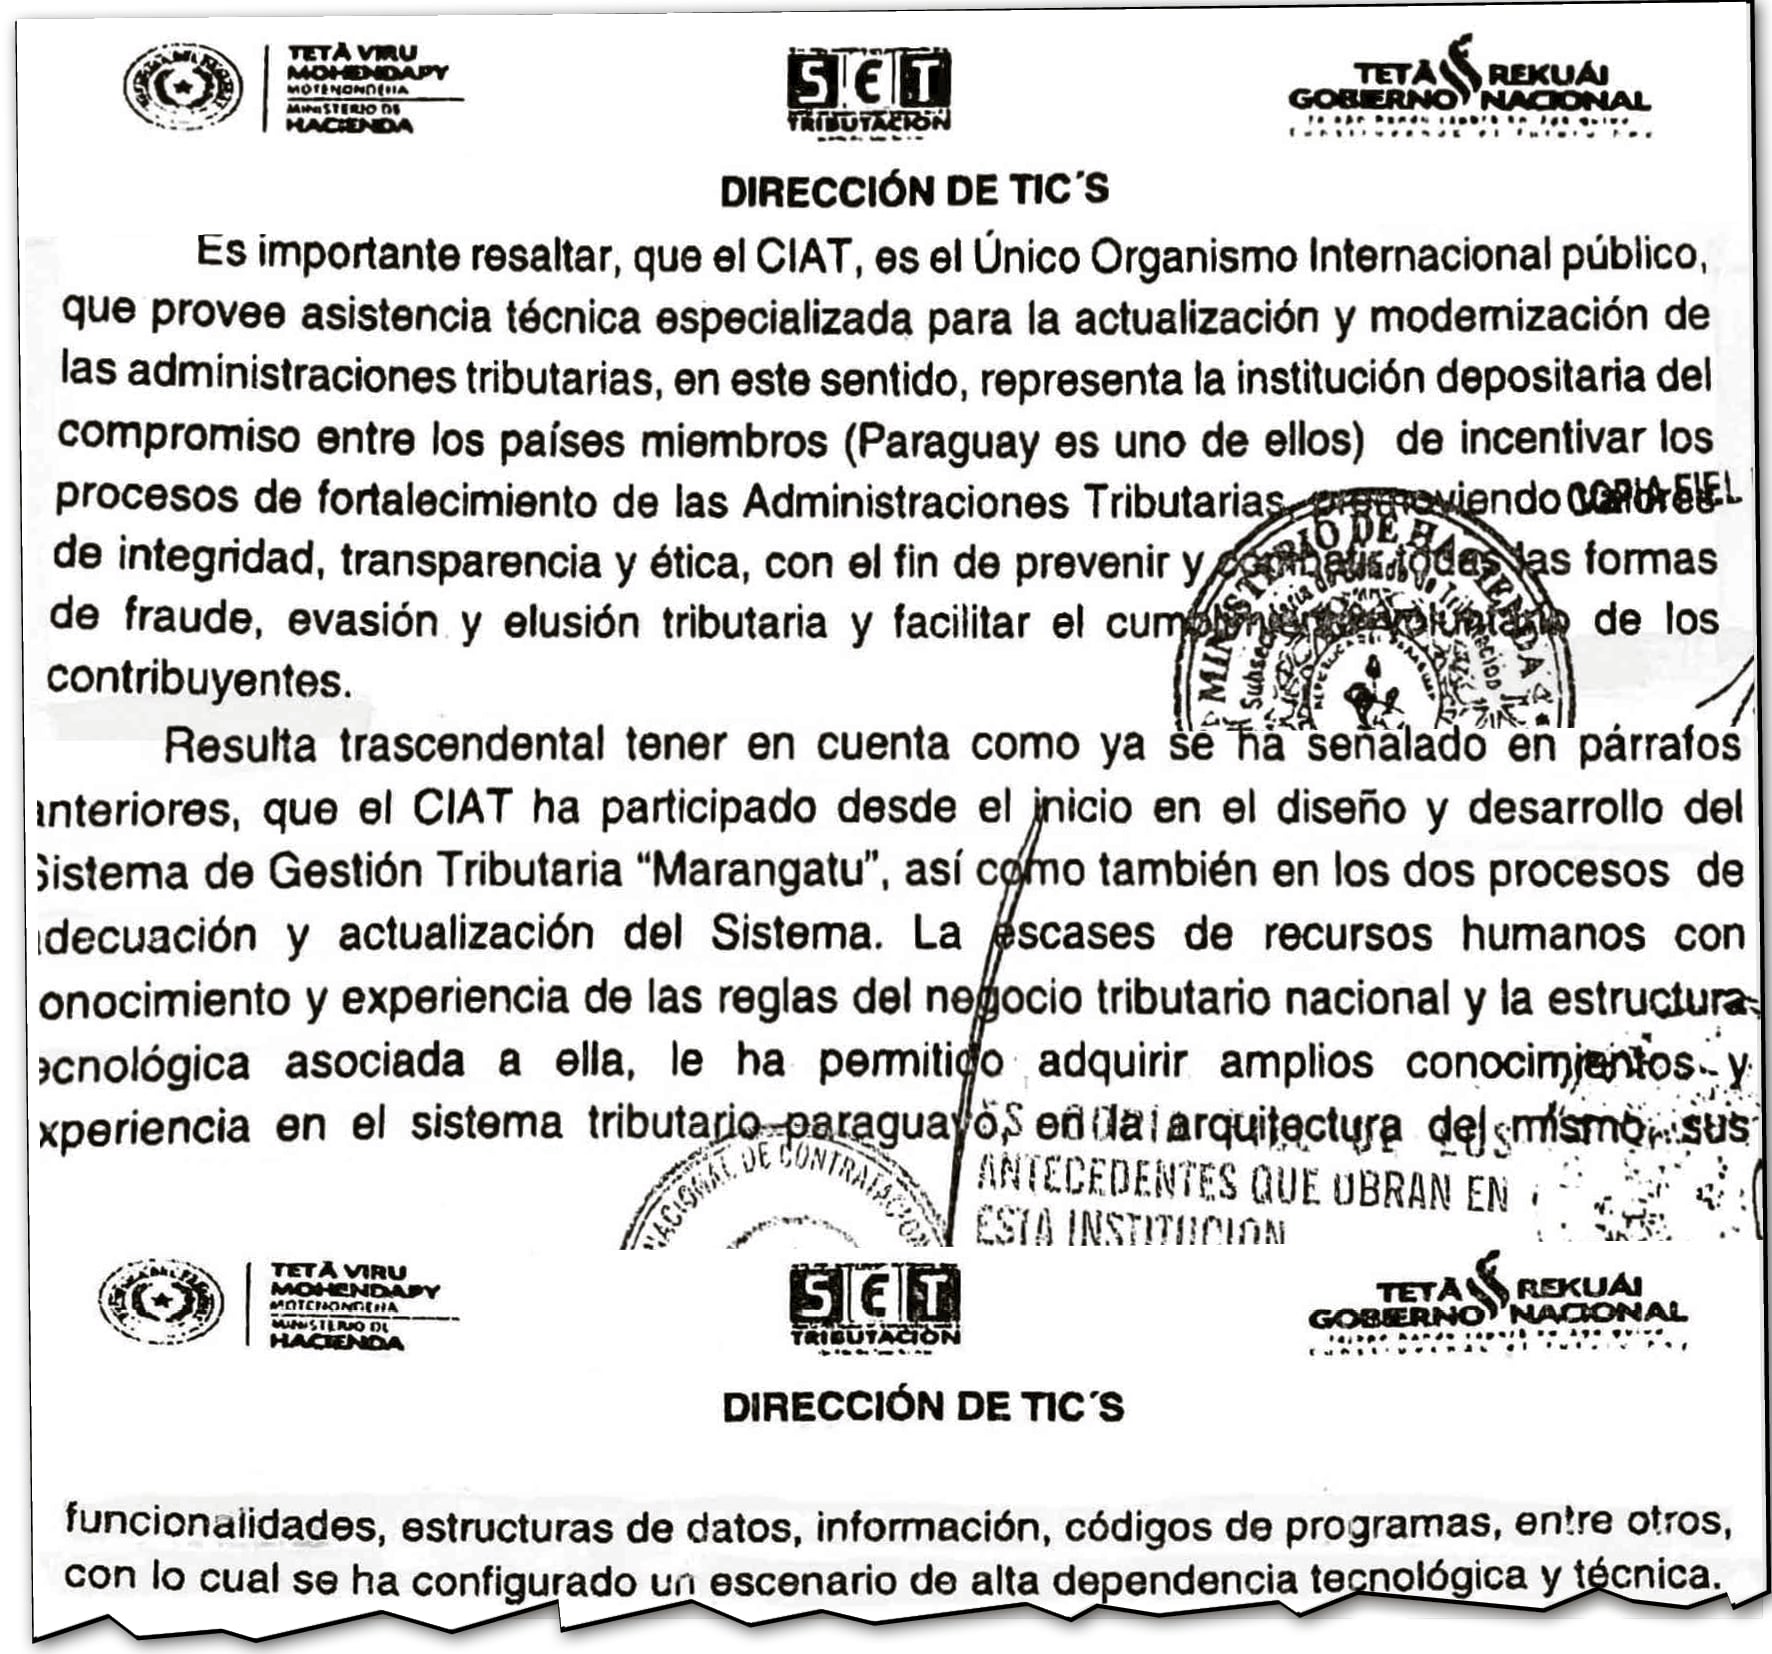 El documento revela que se ha generado una dependencia tecnológica y técnica de la SET hacia el CIAT.